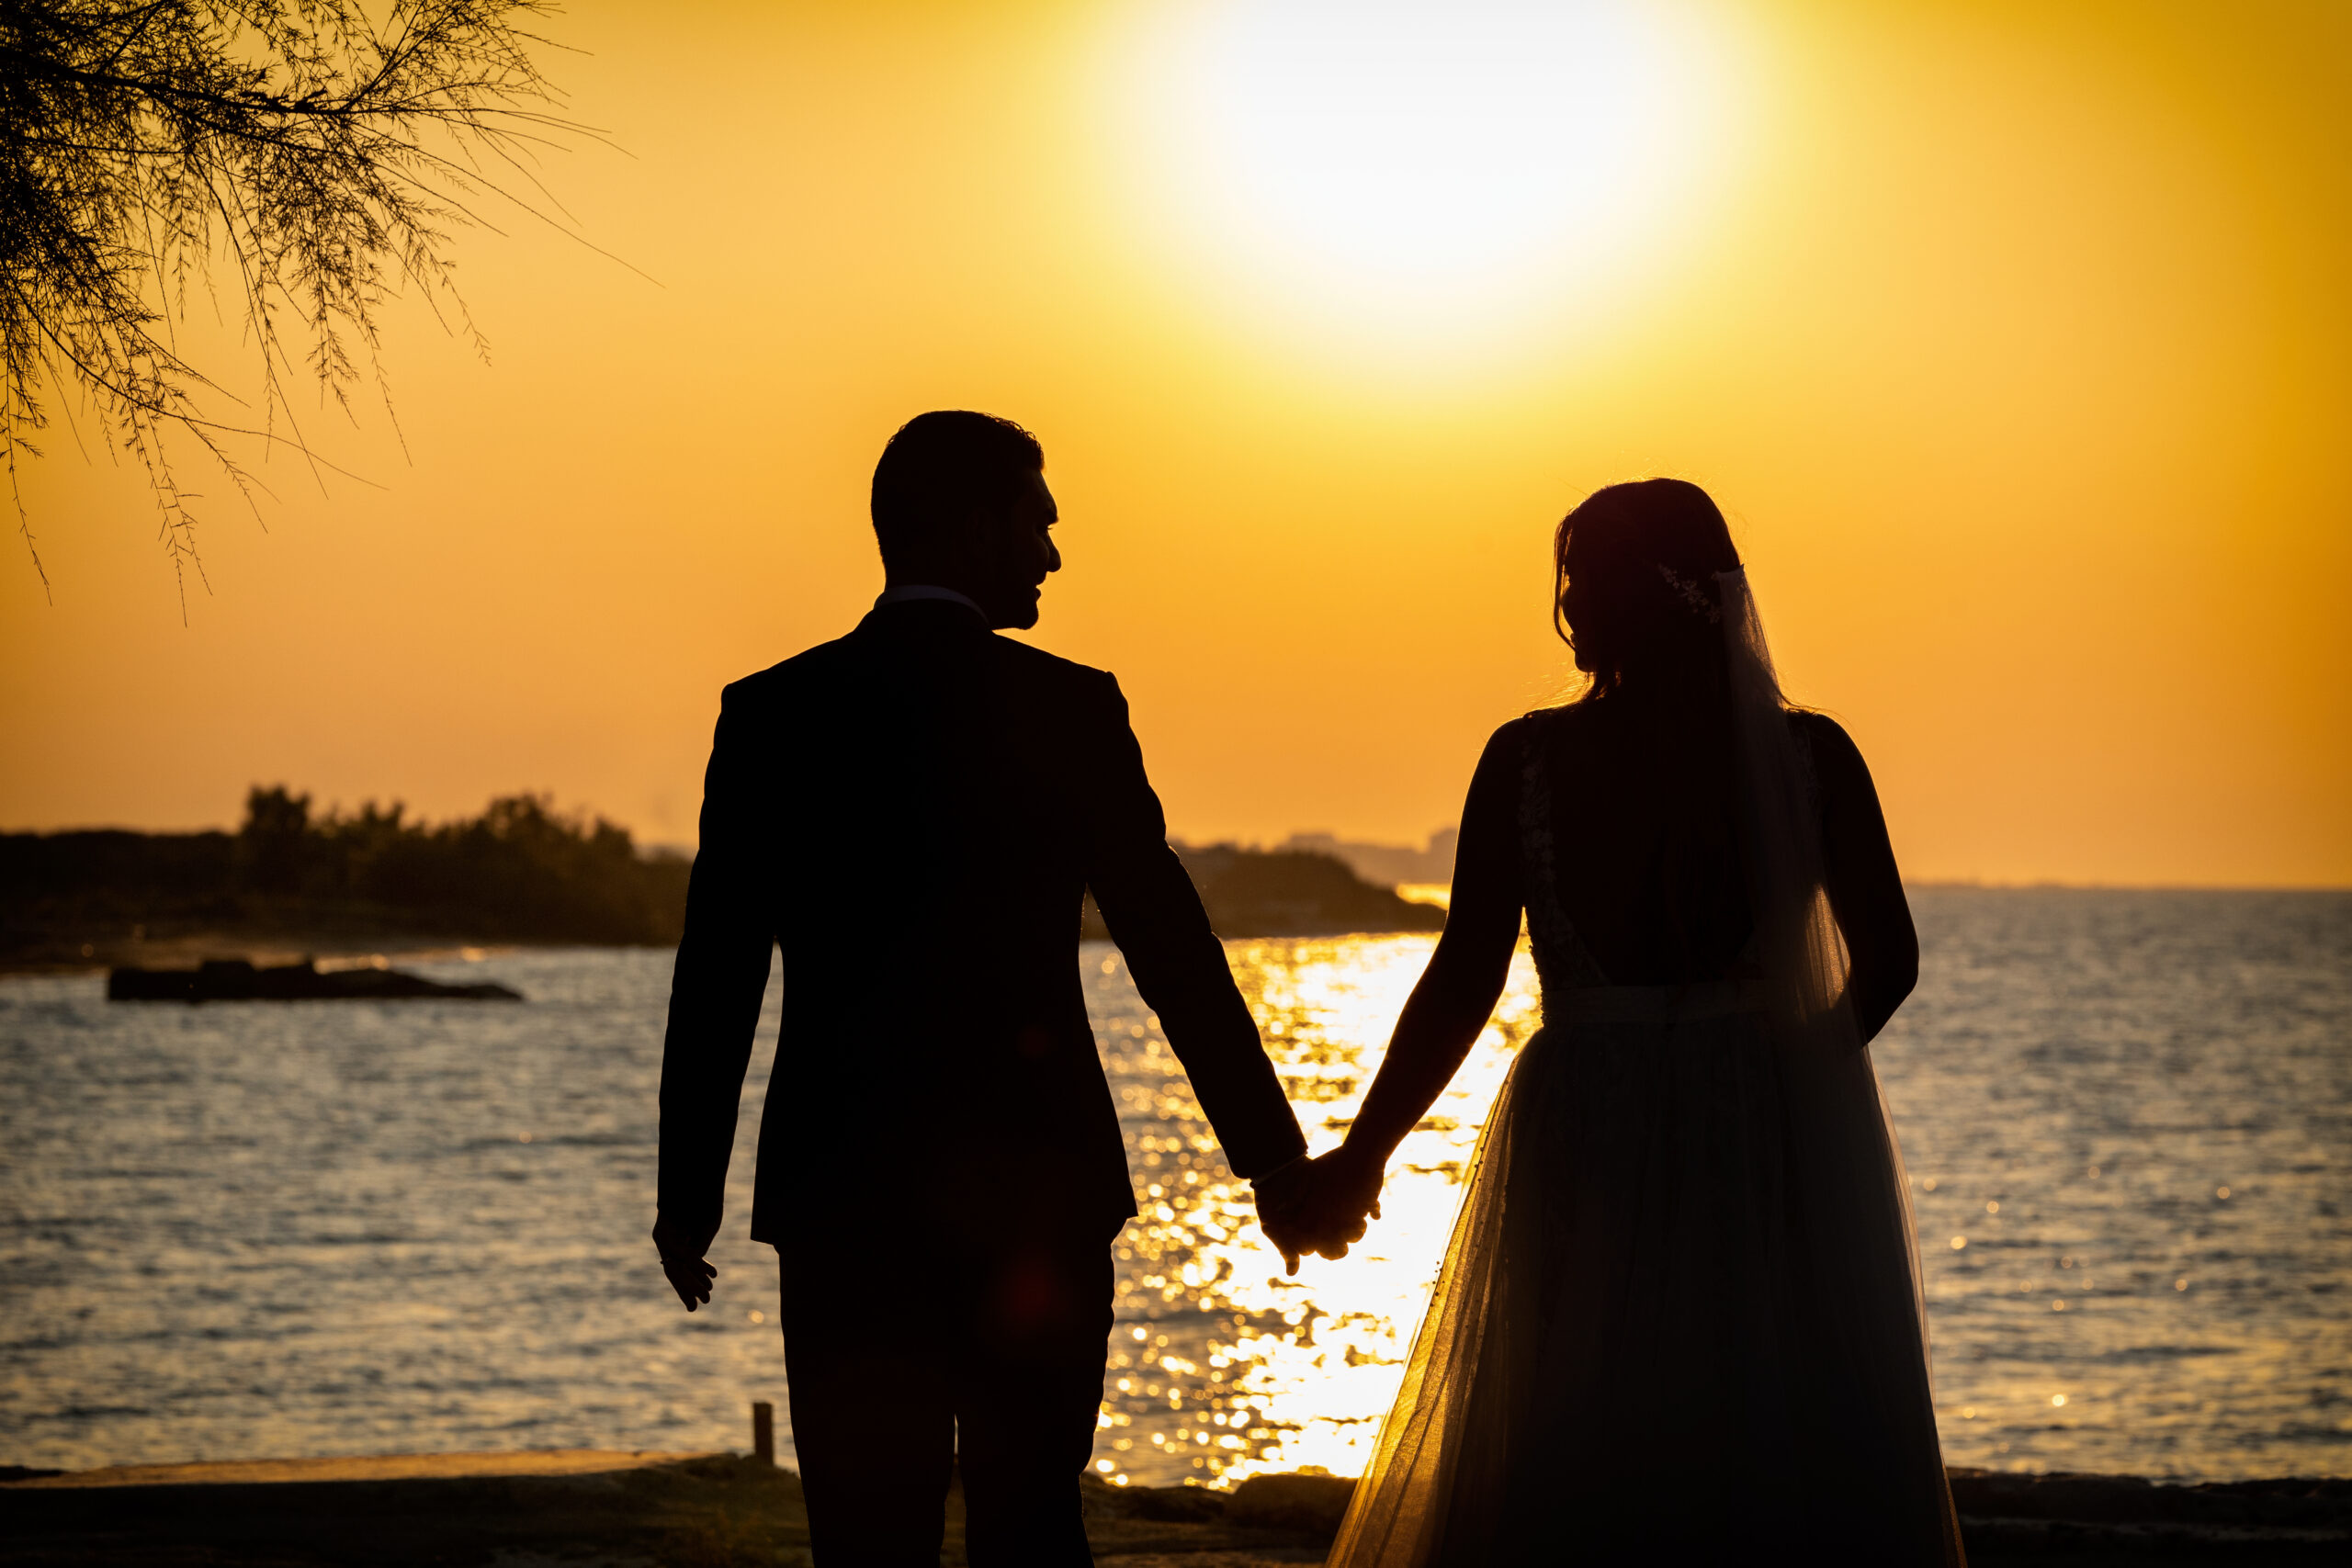 Nuova tendenza “Matrimonio in spiaggia”